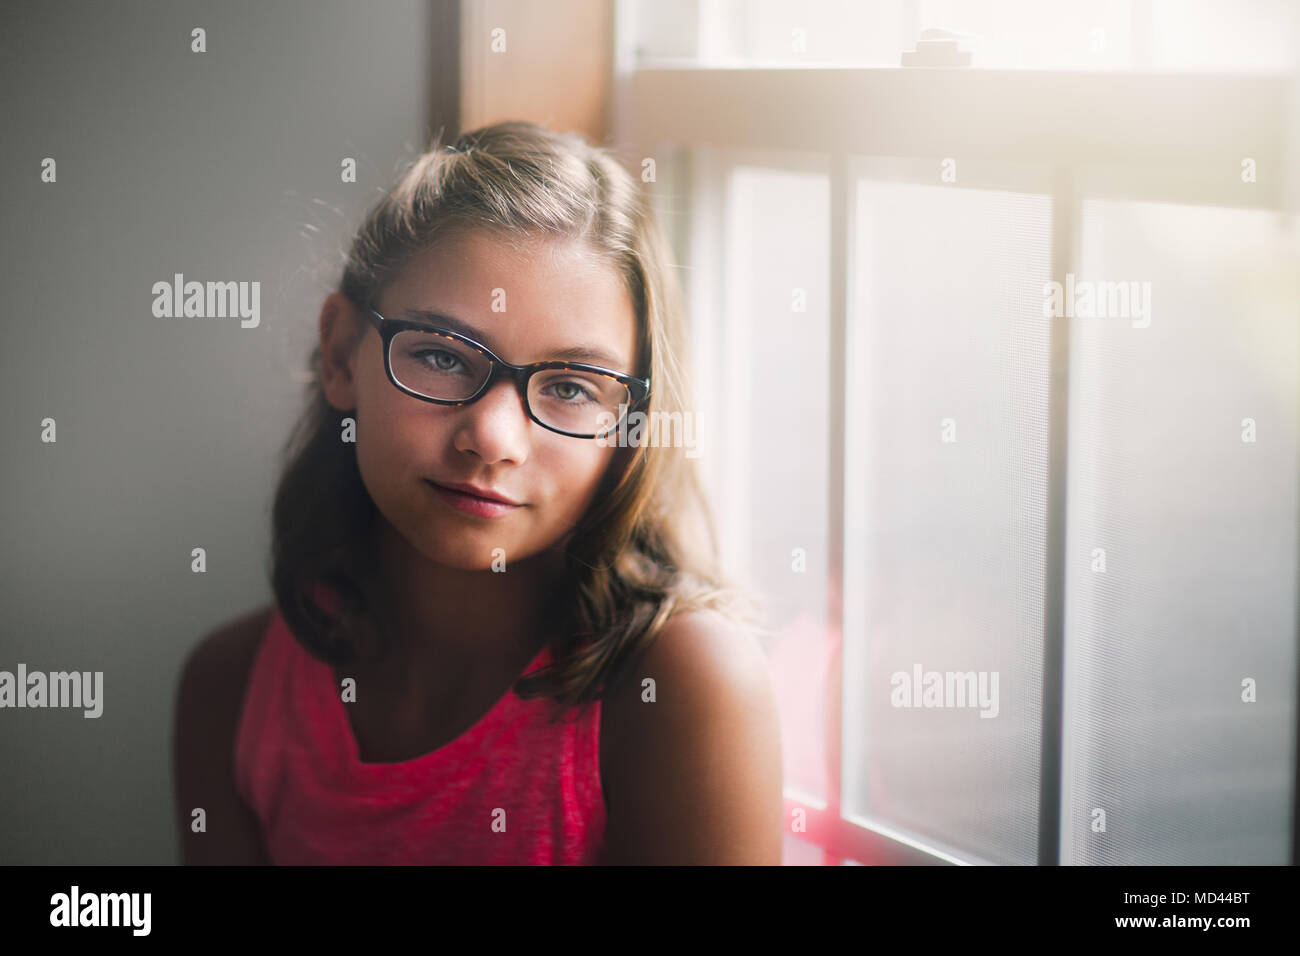 Ritratto di giovane ragazza con gli occhiali, in piedi accanto alla finestra, pensieroso expression Foto Stock